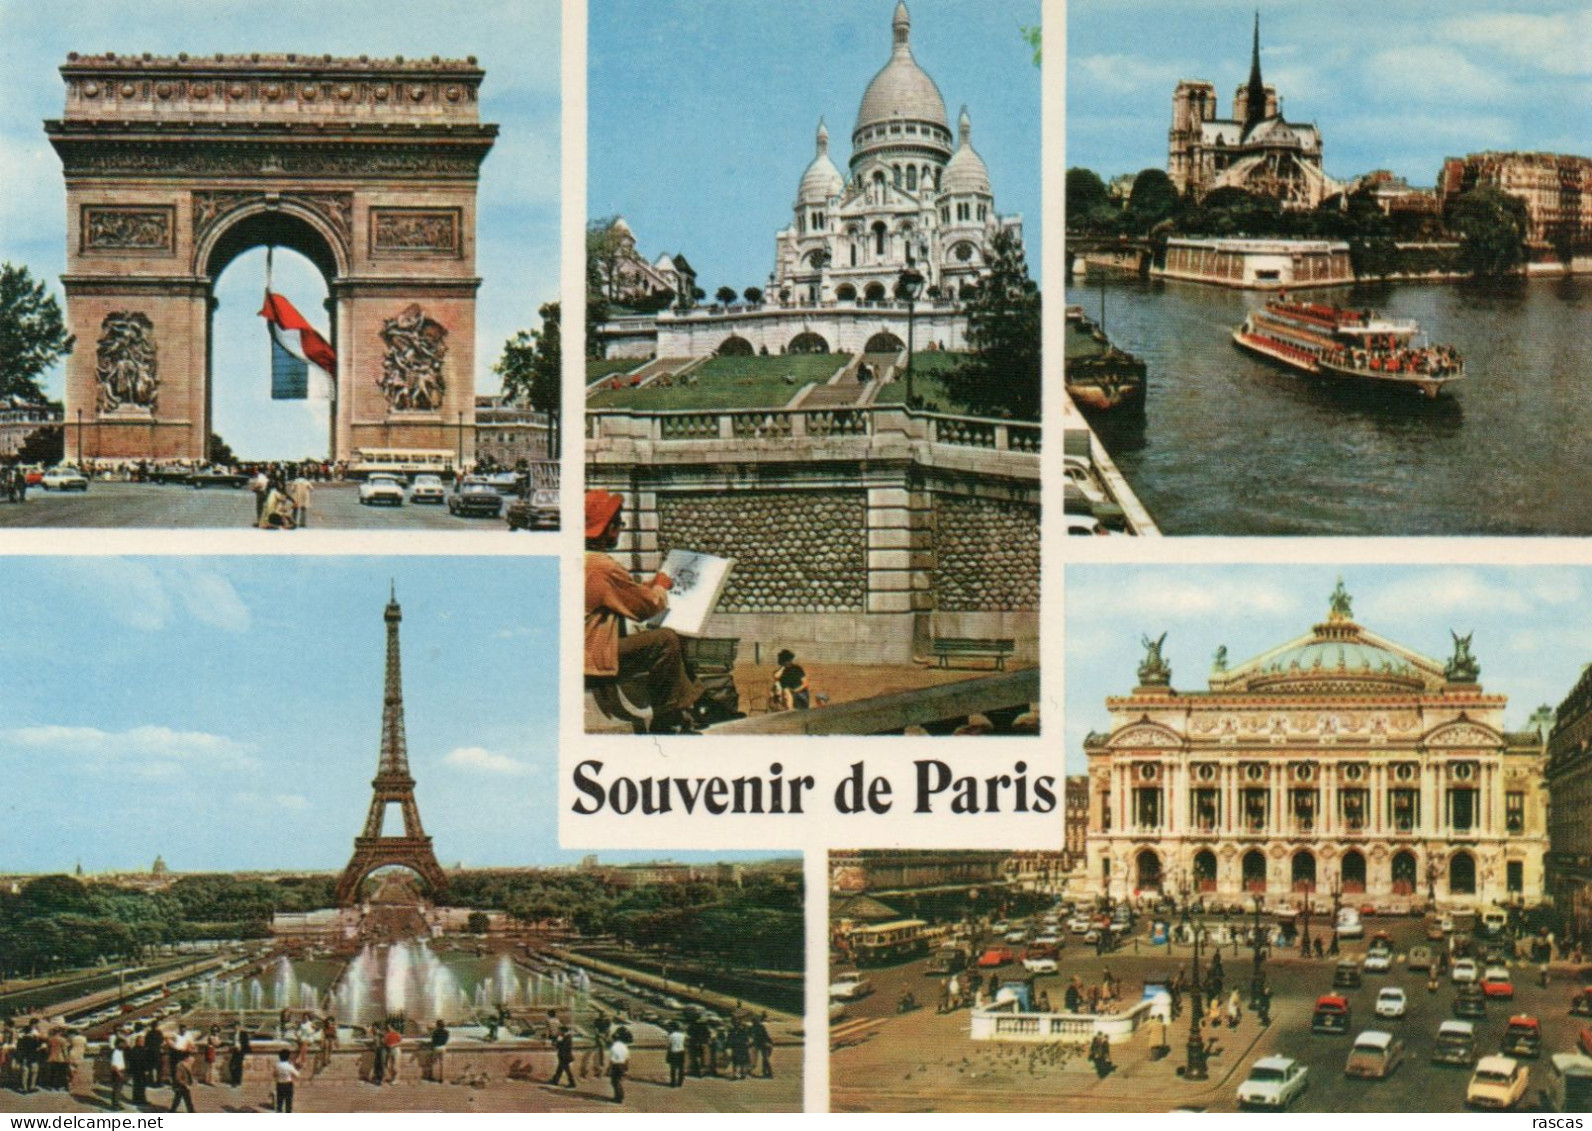 CPM - P - PARIS - SOUVENIR DE PARIS - MULTIVUES - ARC DE TRIOMPHE - TOUR EIFFEL - SACRE COEUR - OPERA - NOTRE DAME - Panorama's